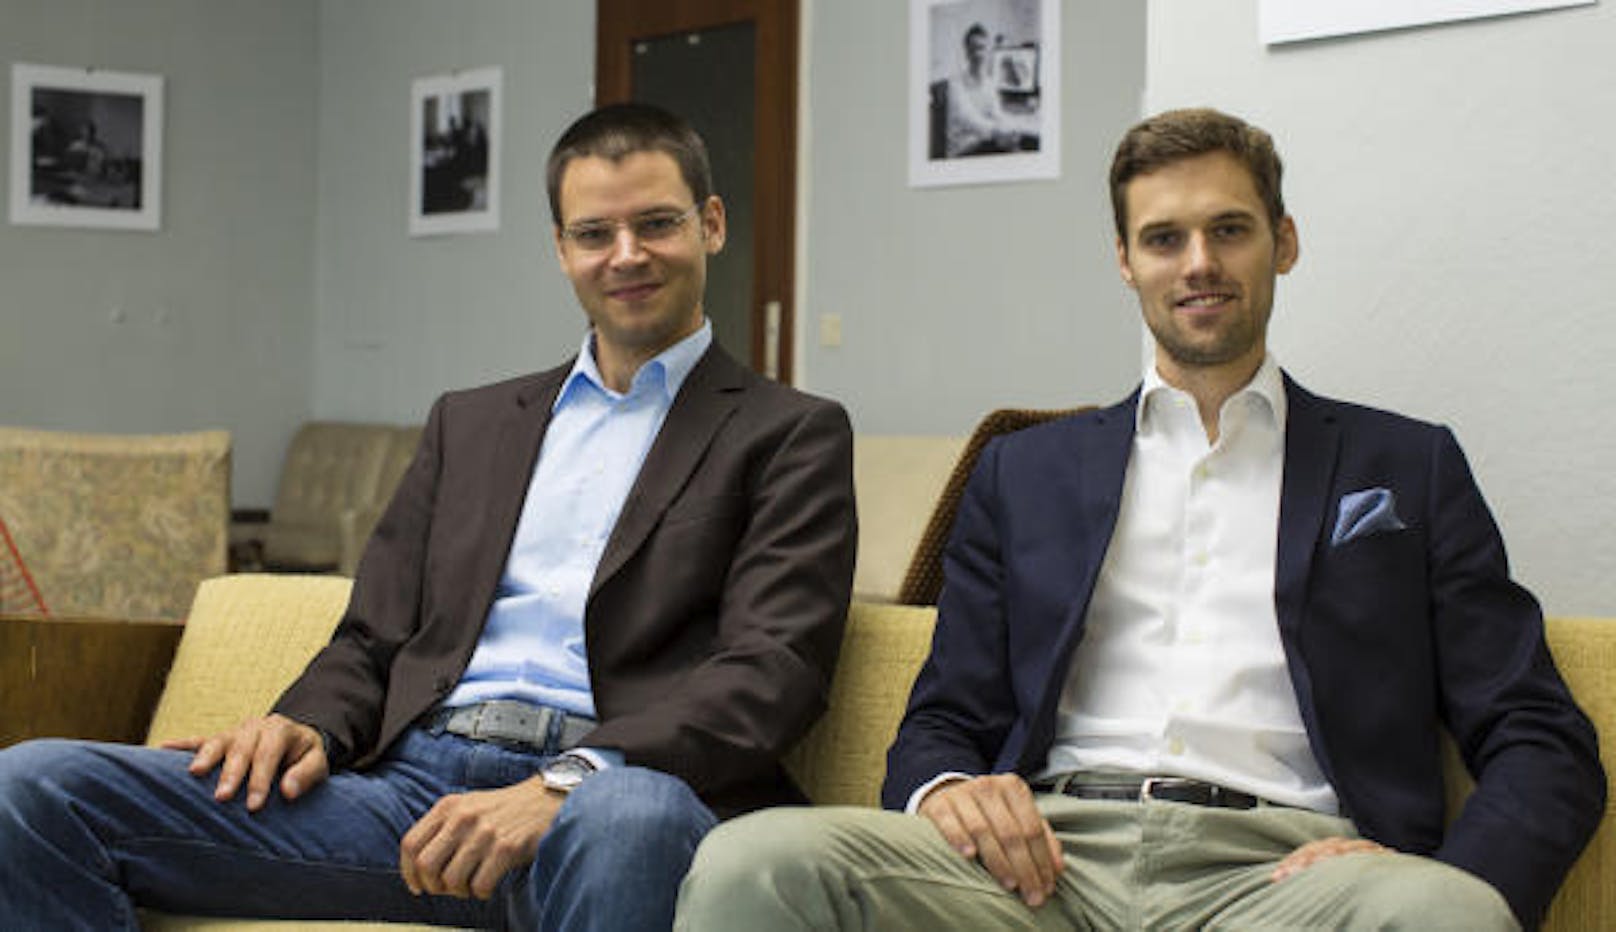 Sie stecken hinter dem Start-up: Die beiden Gründer Lukas Pilat und Robert Kopka (rechts).